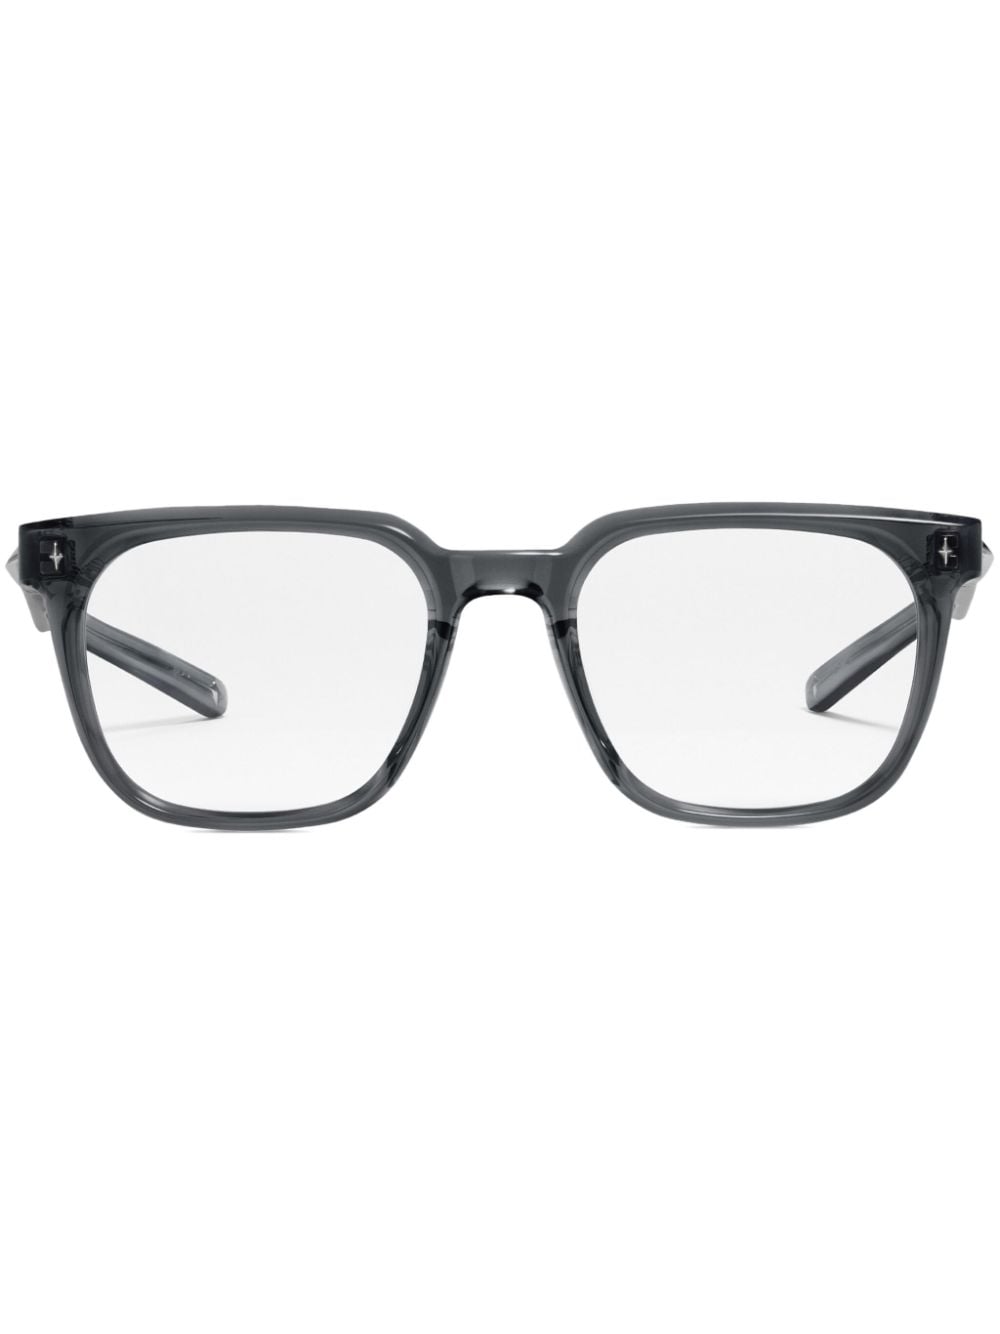 Ojo Gc9 square-frame glasses